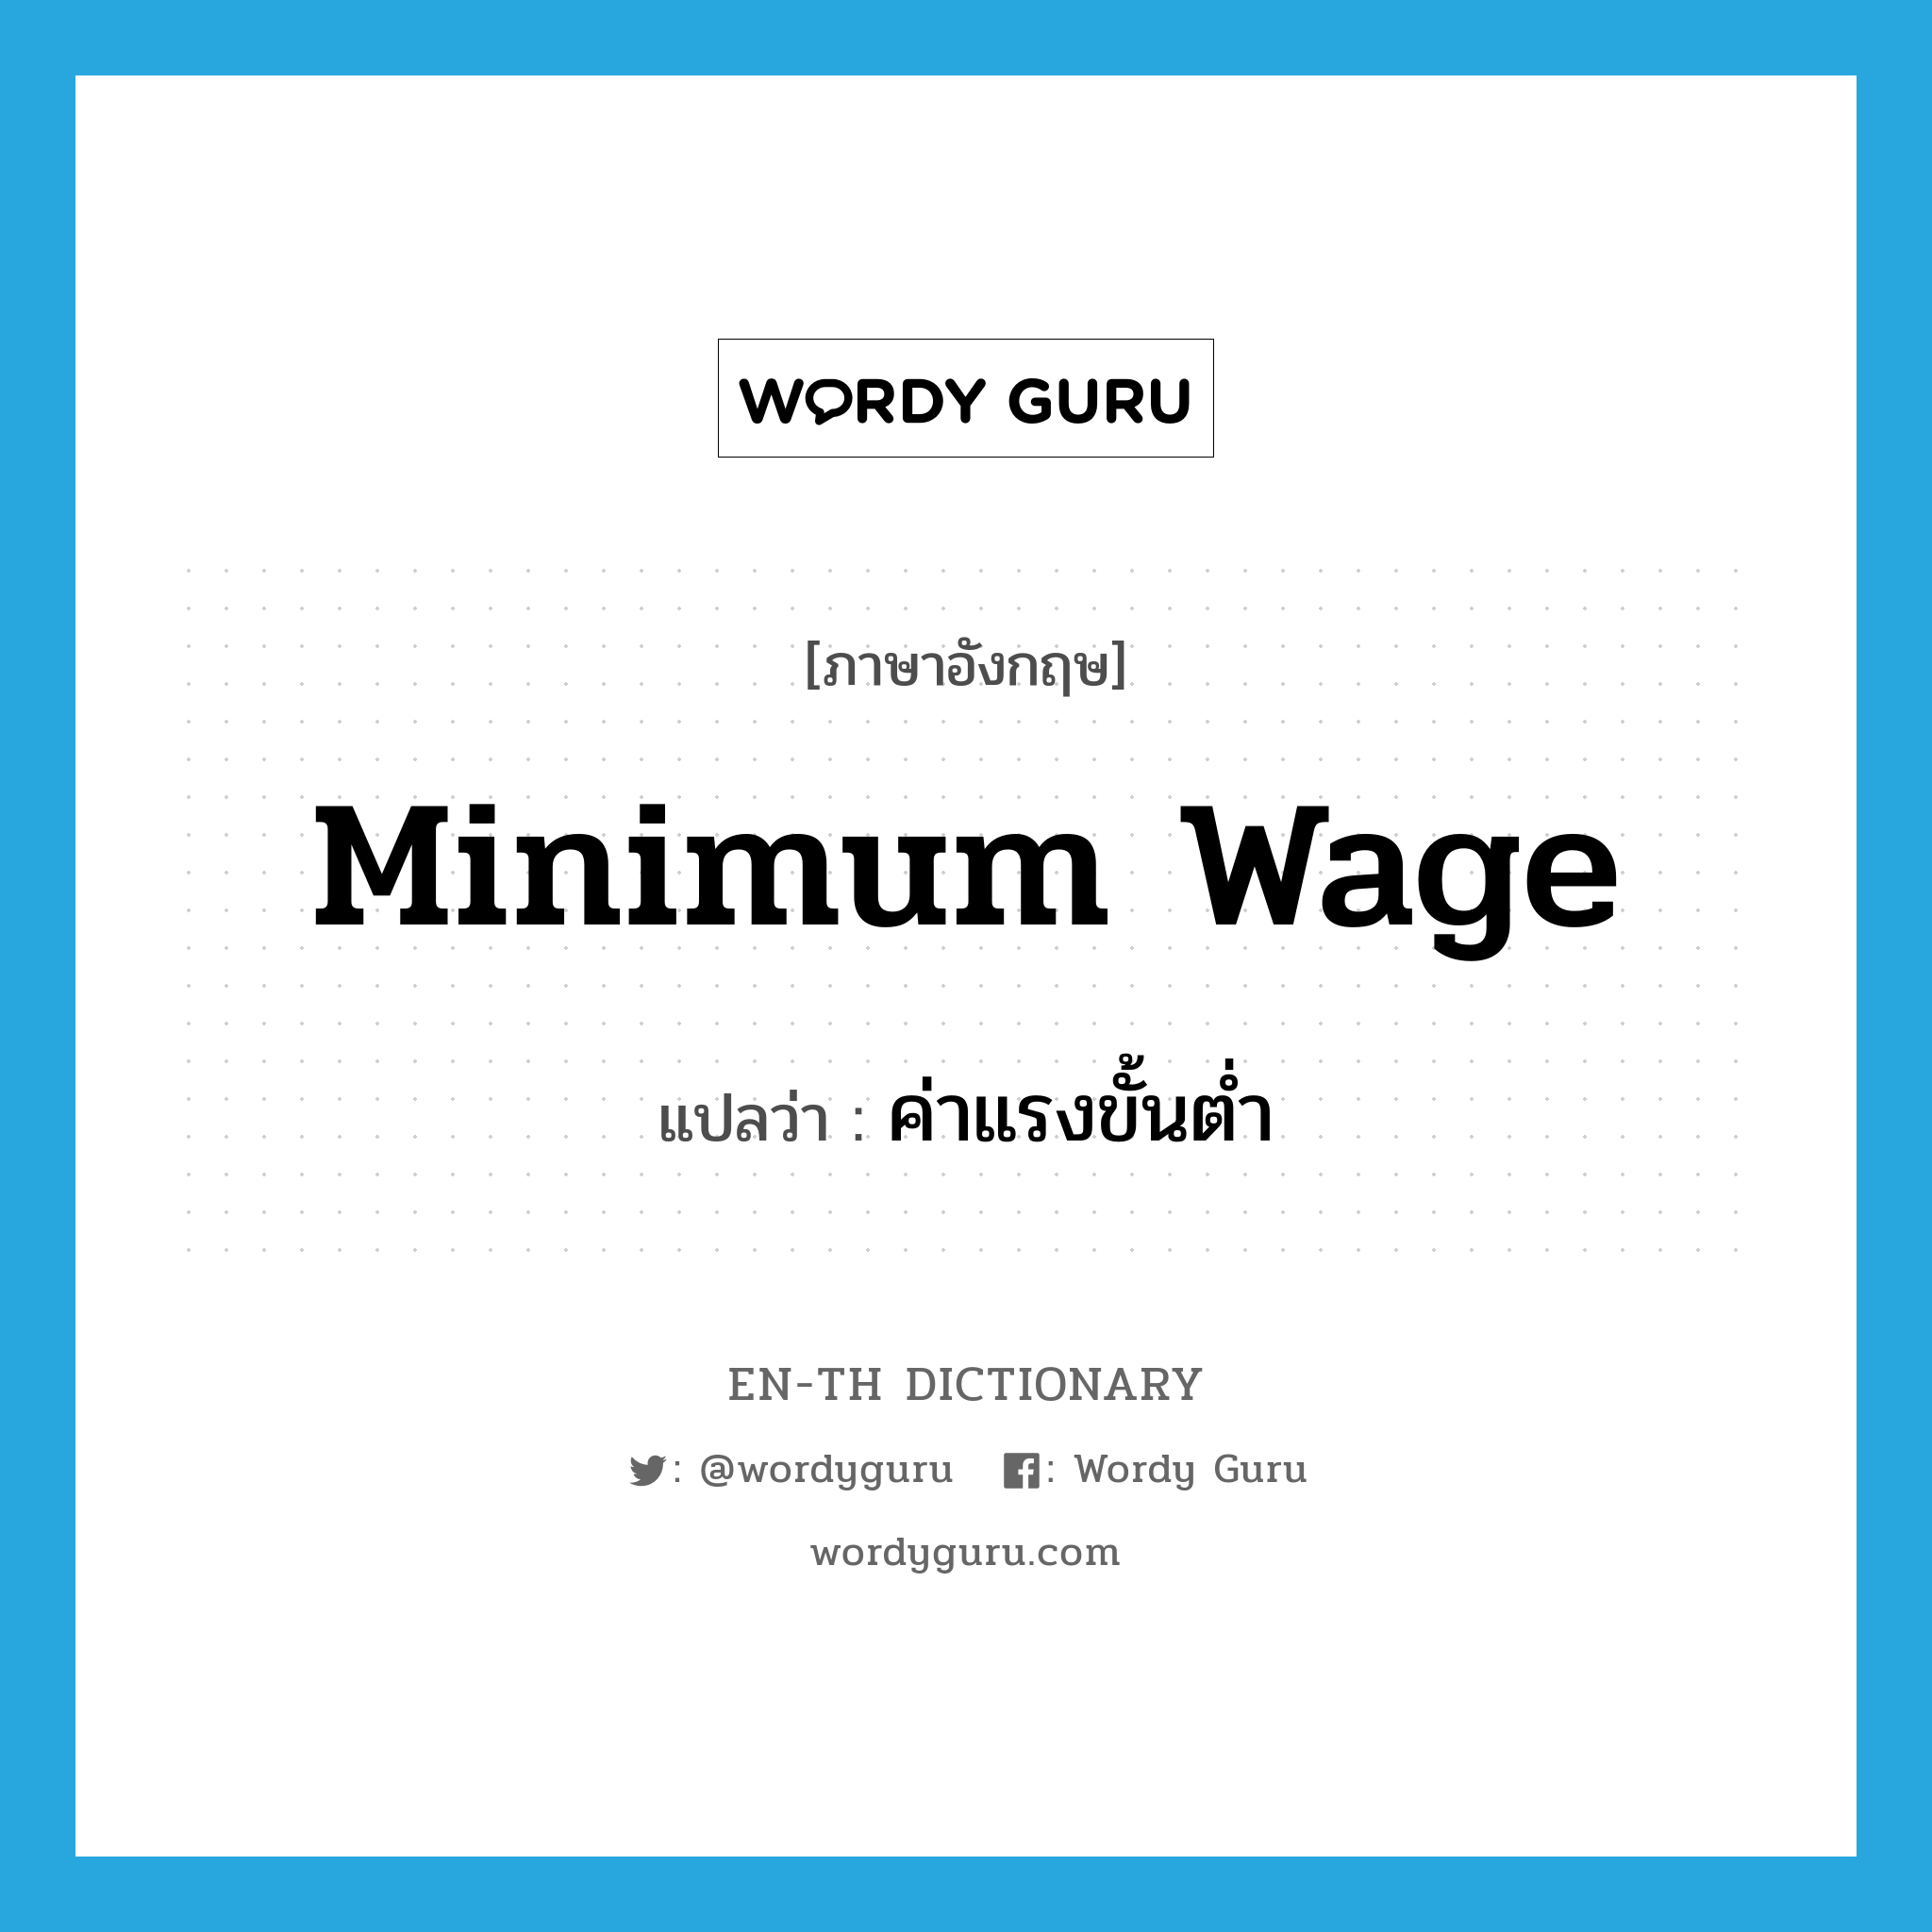 minimum wage แปลว่า?, คำศัพท์ภาษาอังกฤษ minimum wage แปลว่า ค่าแรงขั้นต่ำ ประเภท N หมวด N